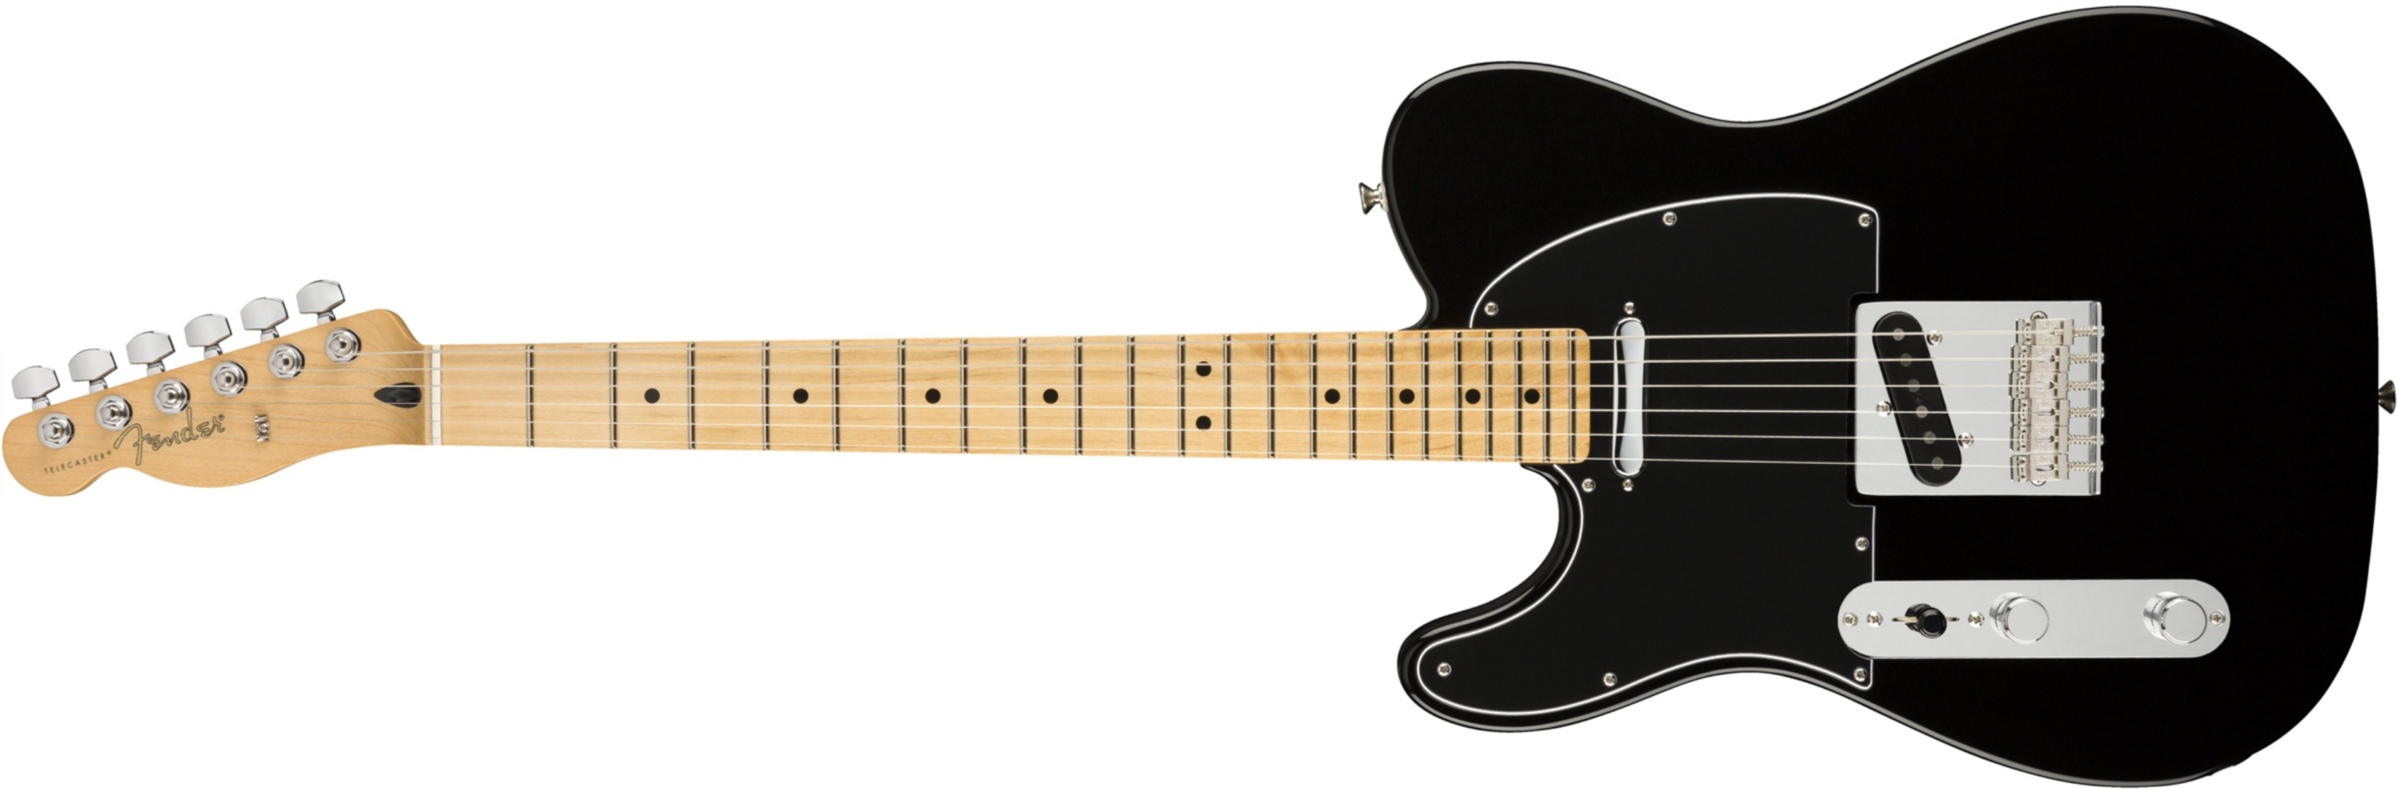 Fender Tele Player Lh Gaucher Mex Ss Mn - Black - Linkshandige elektrische gitaar - Main picture